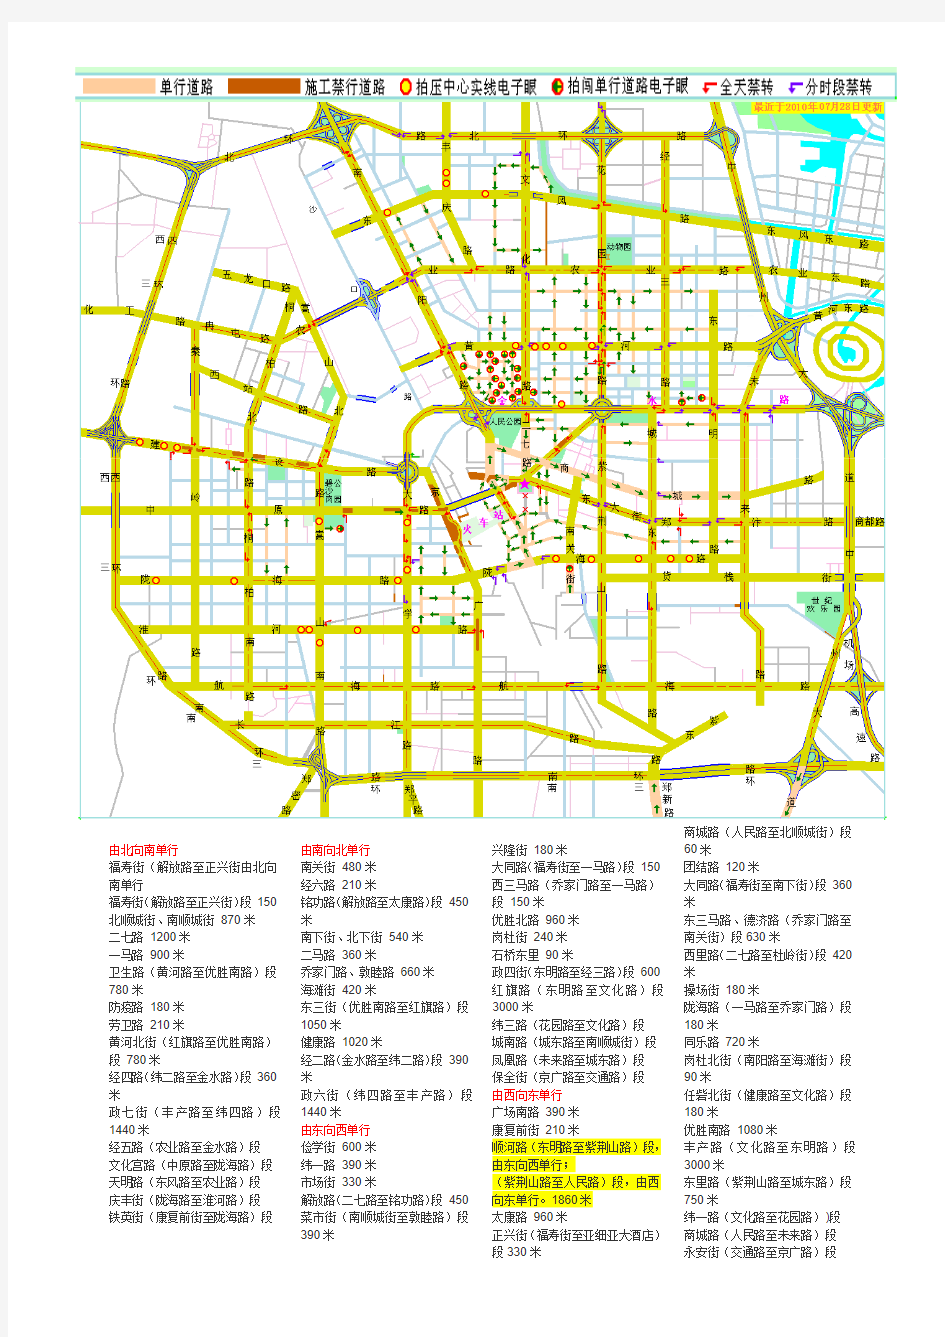 郑州市单行道及电子眼分布图